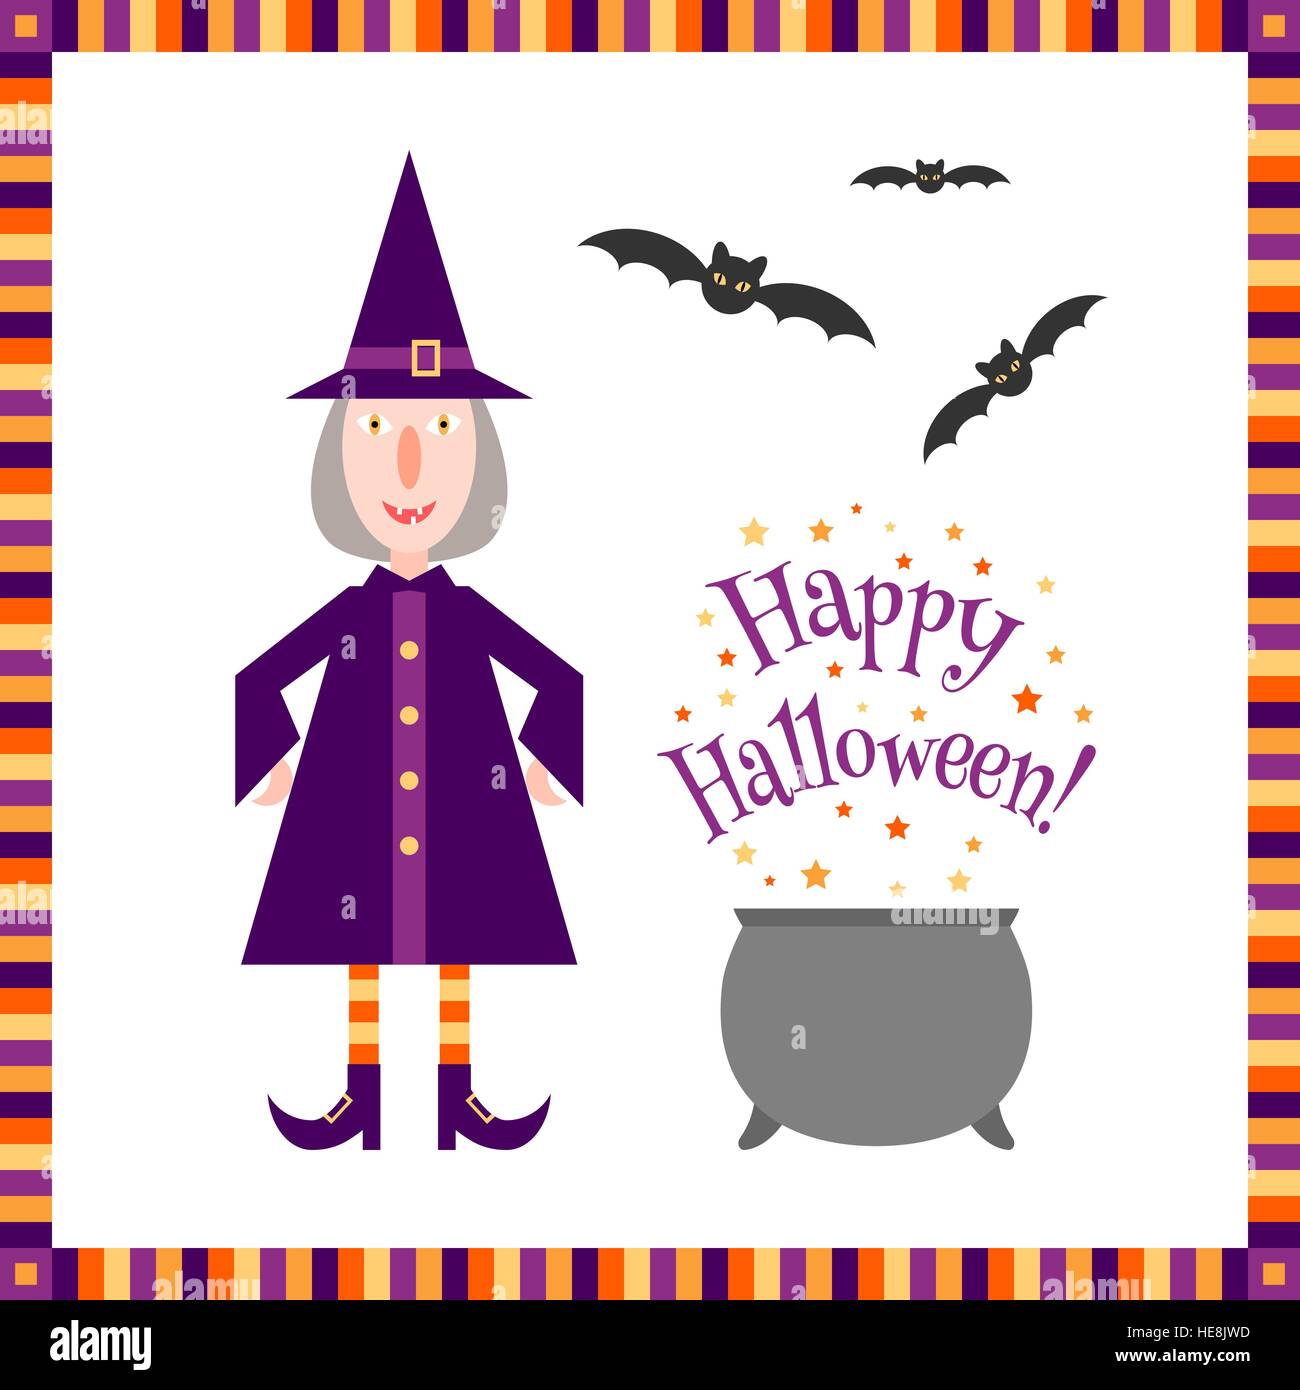 Funny little witch près d'un chaudron magique avec un 'Happy Halloween !' accueil et de chauves-souris volant au-dessus. Illustration de Vecteur